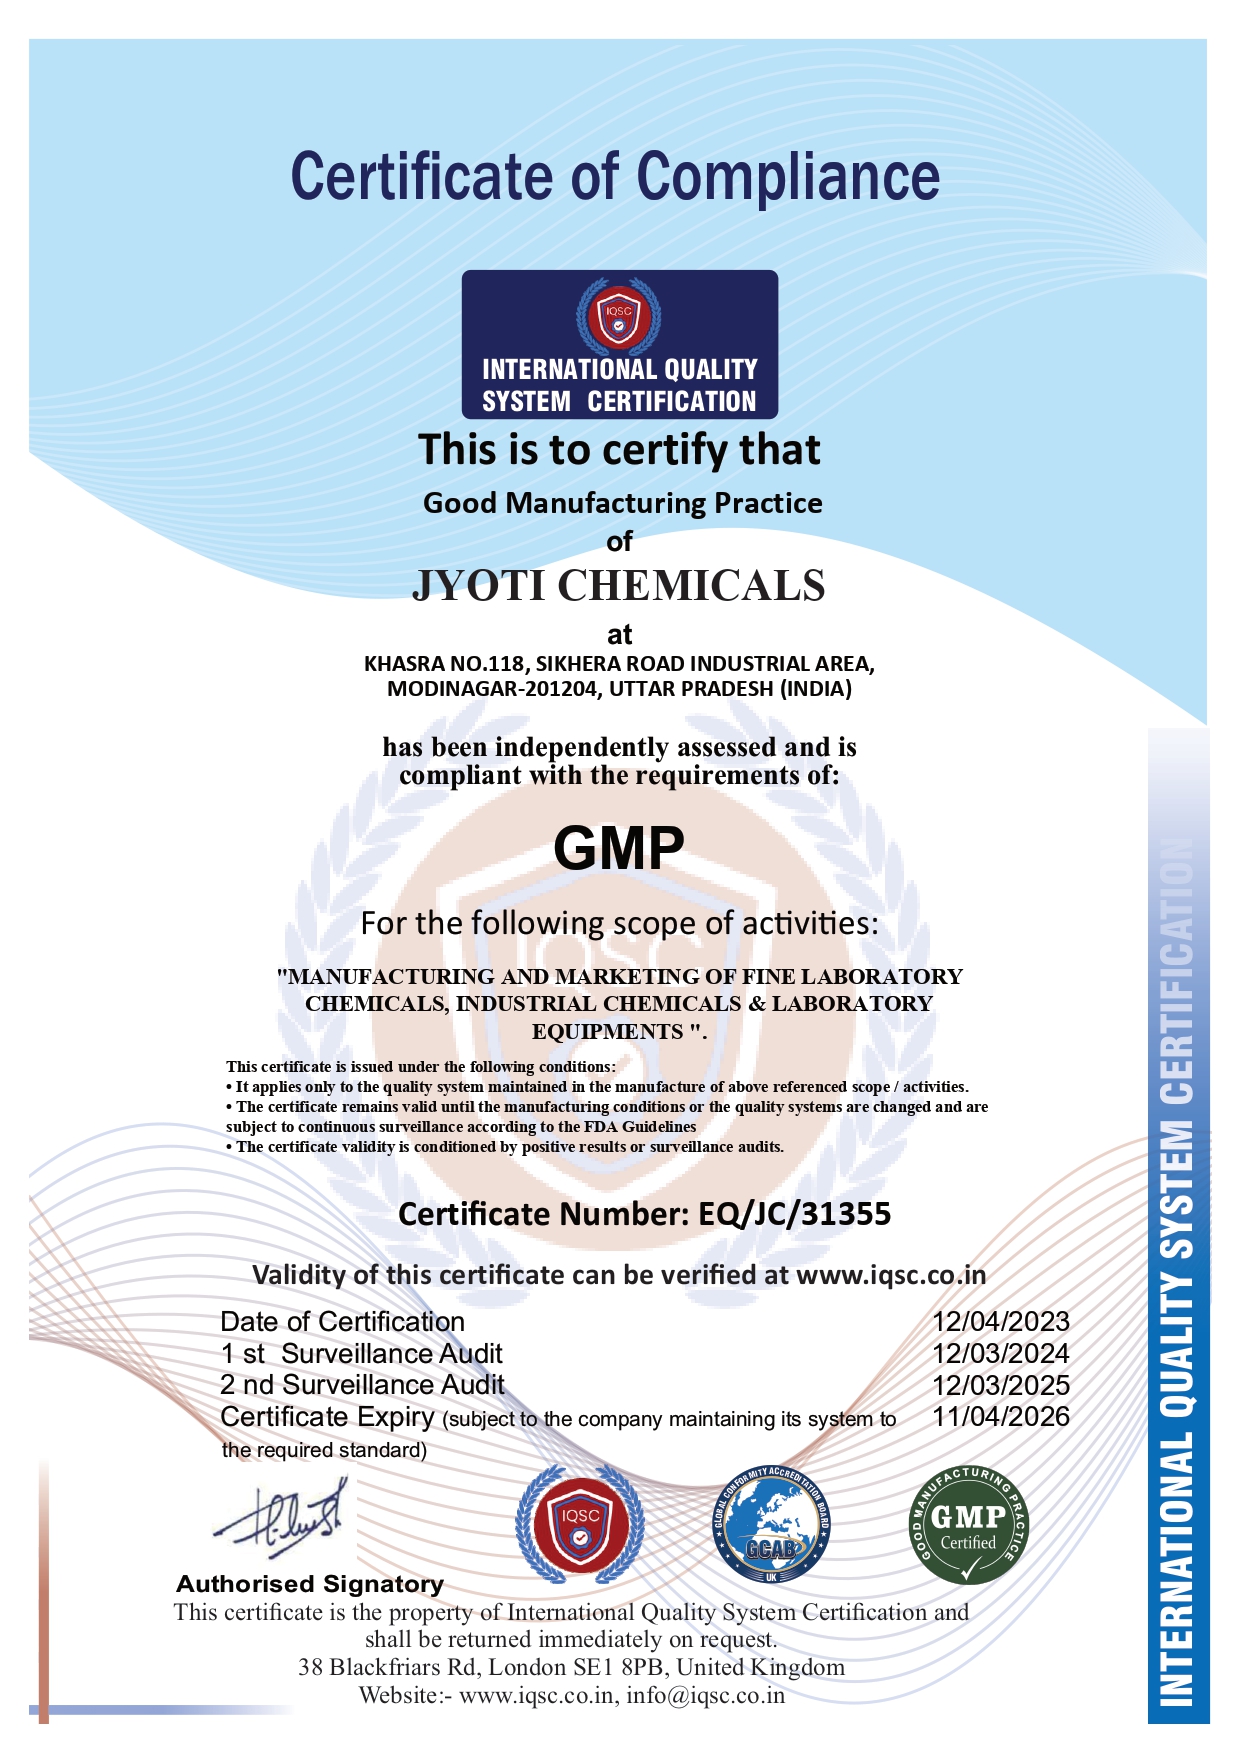 Jyoti Chemicals GMP Certificate